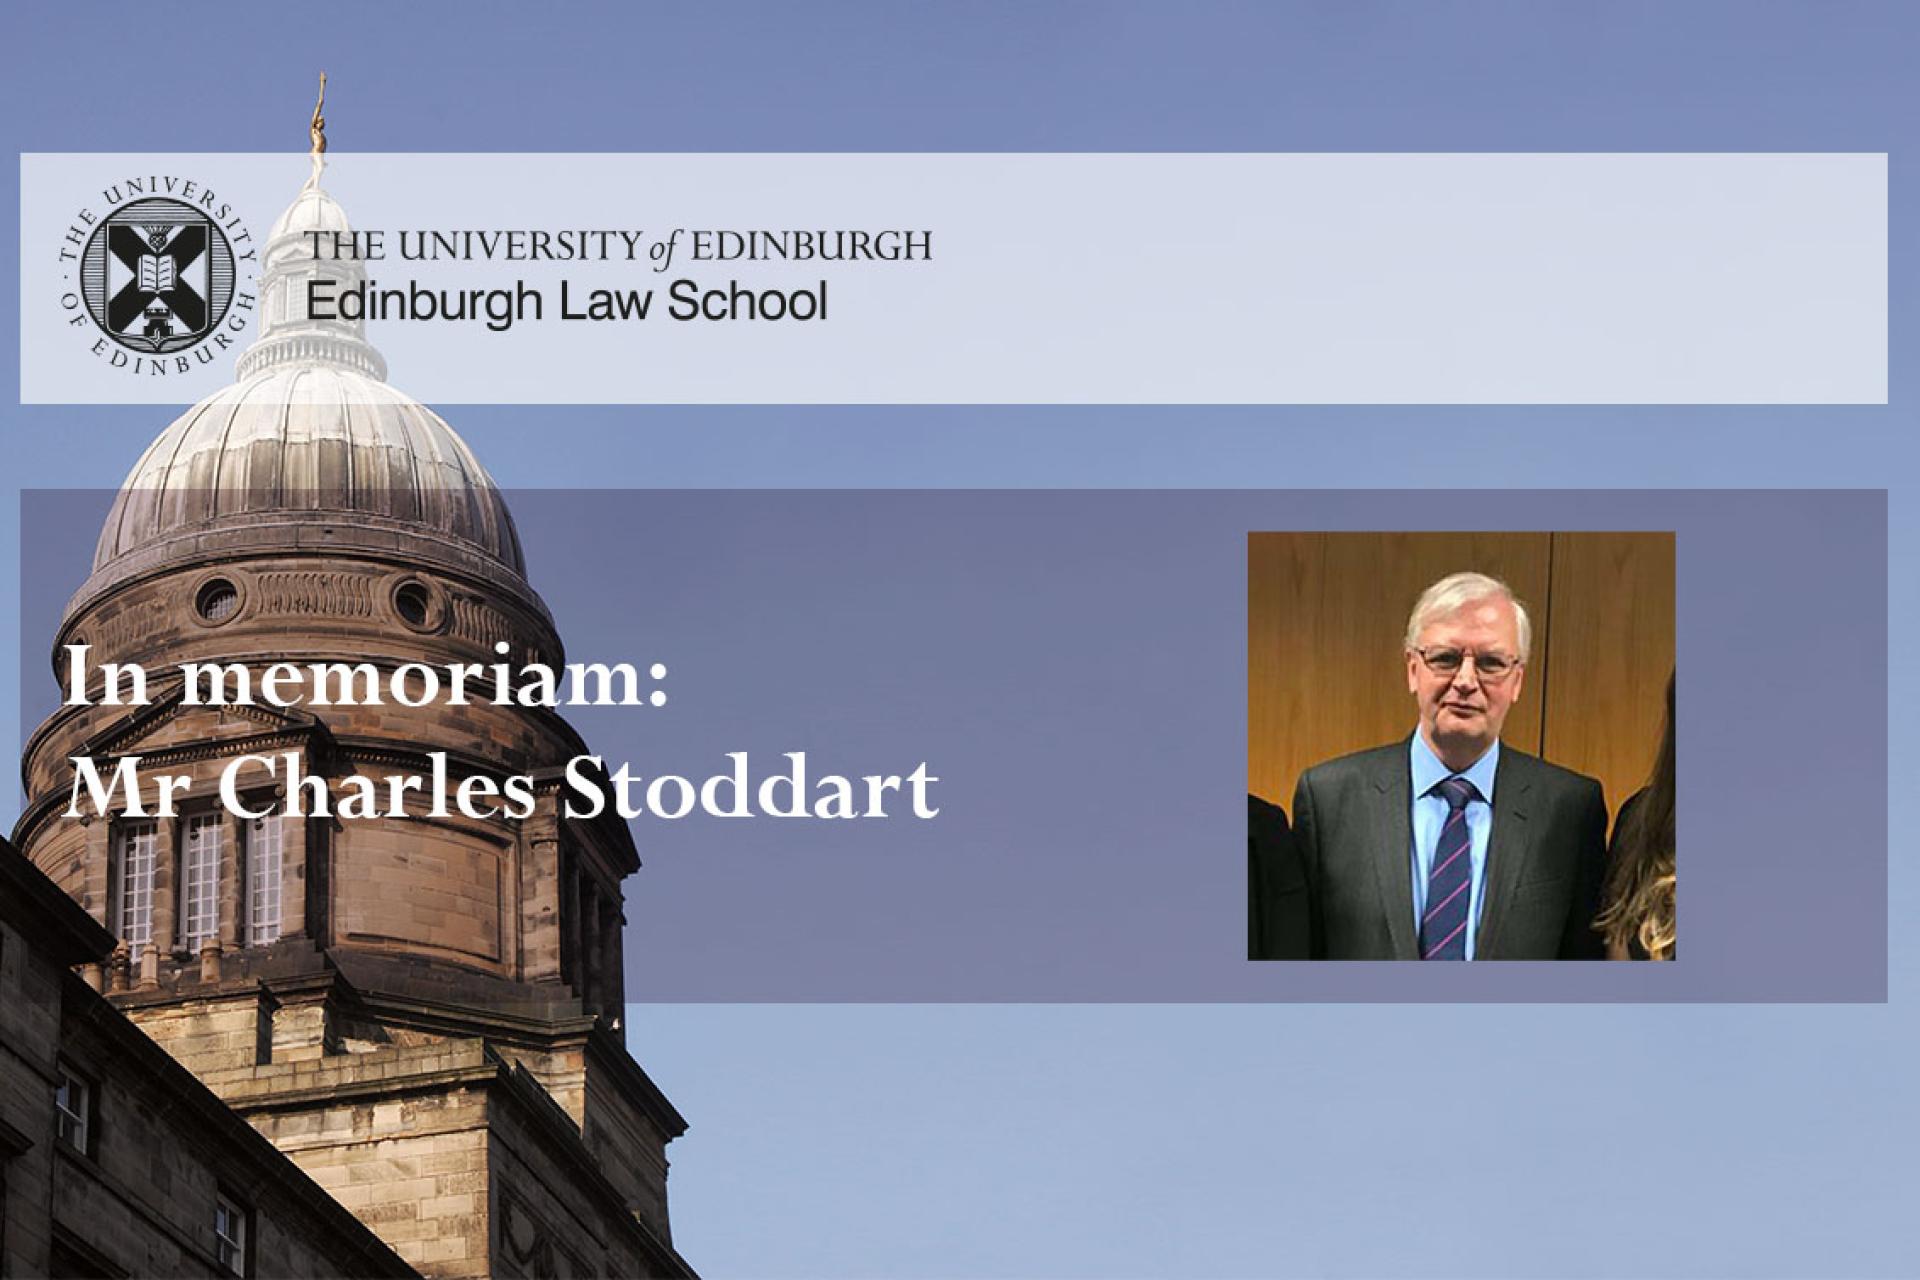 In memoriam: Mr Charles Stoddart